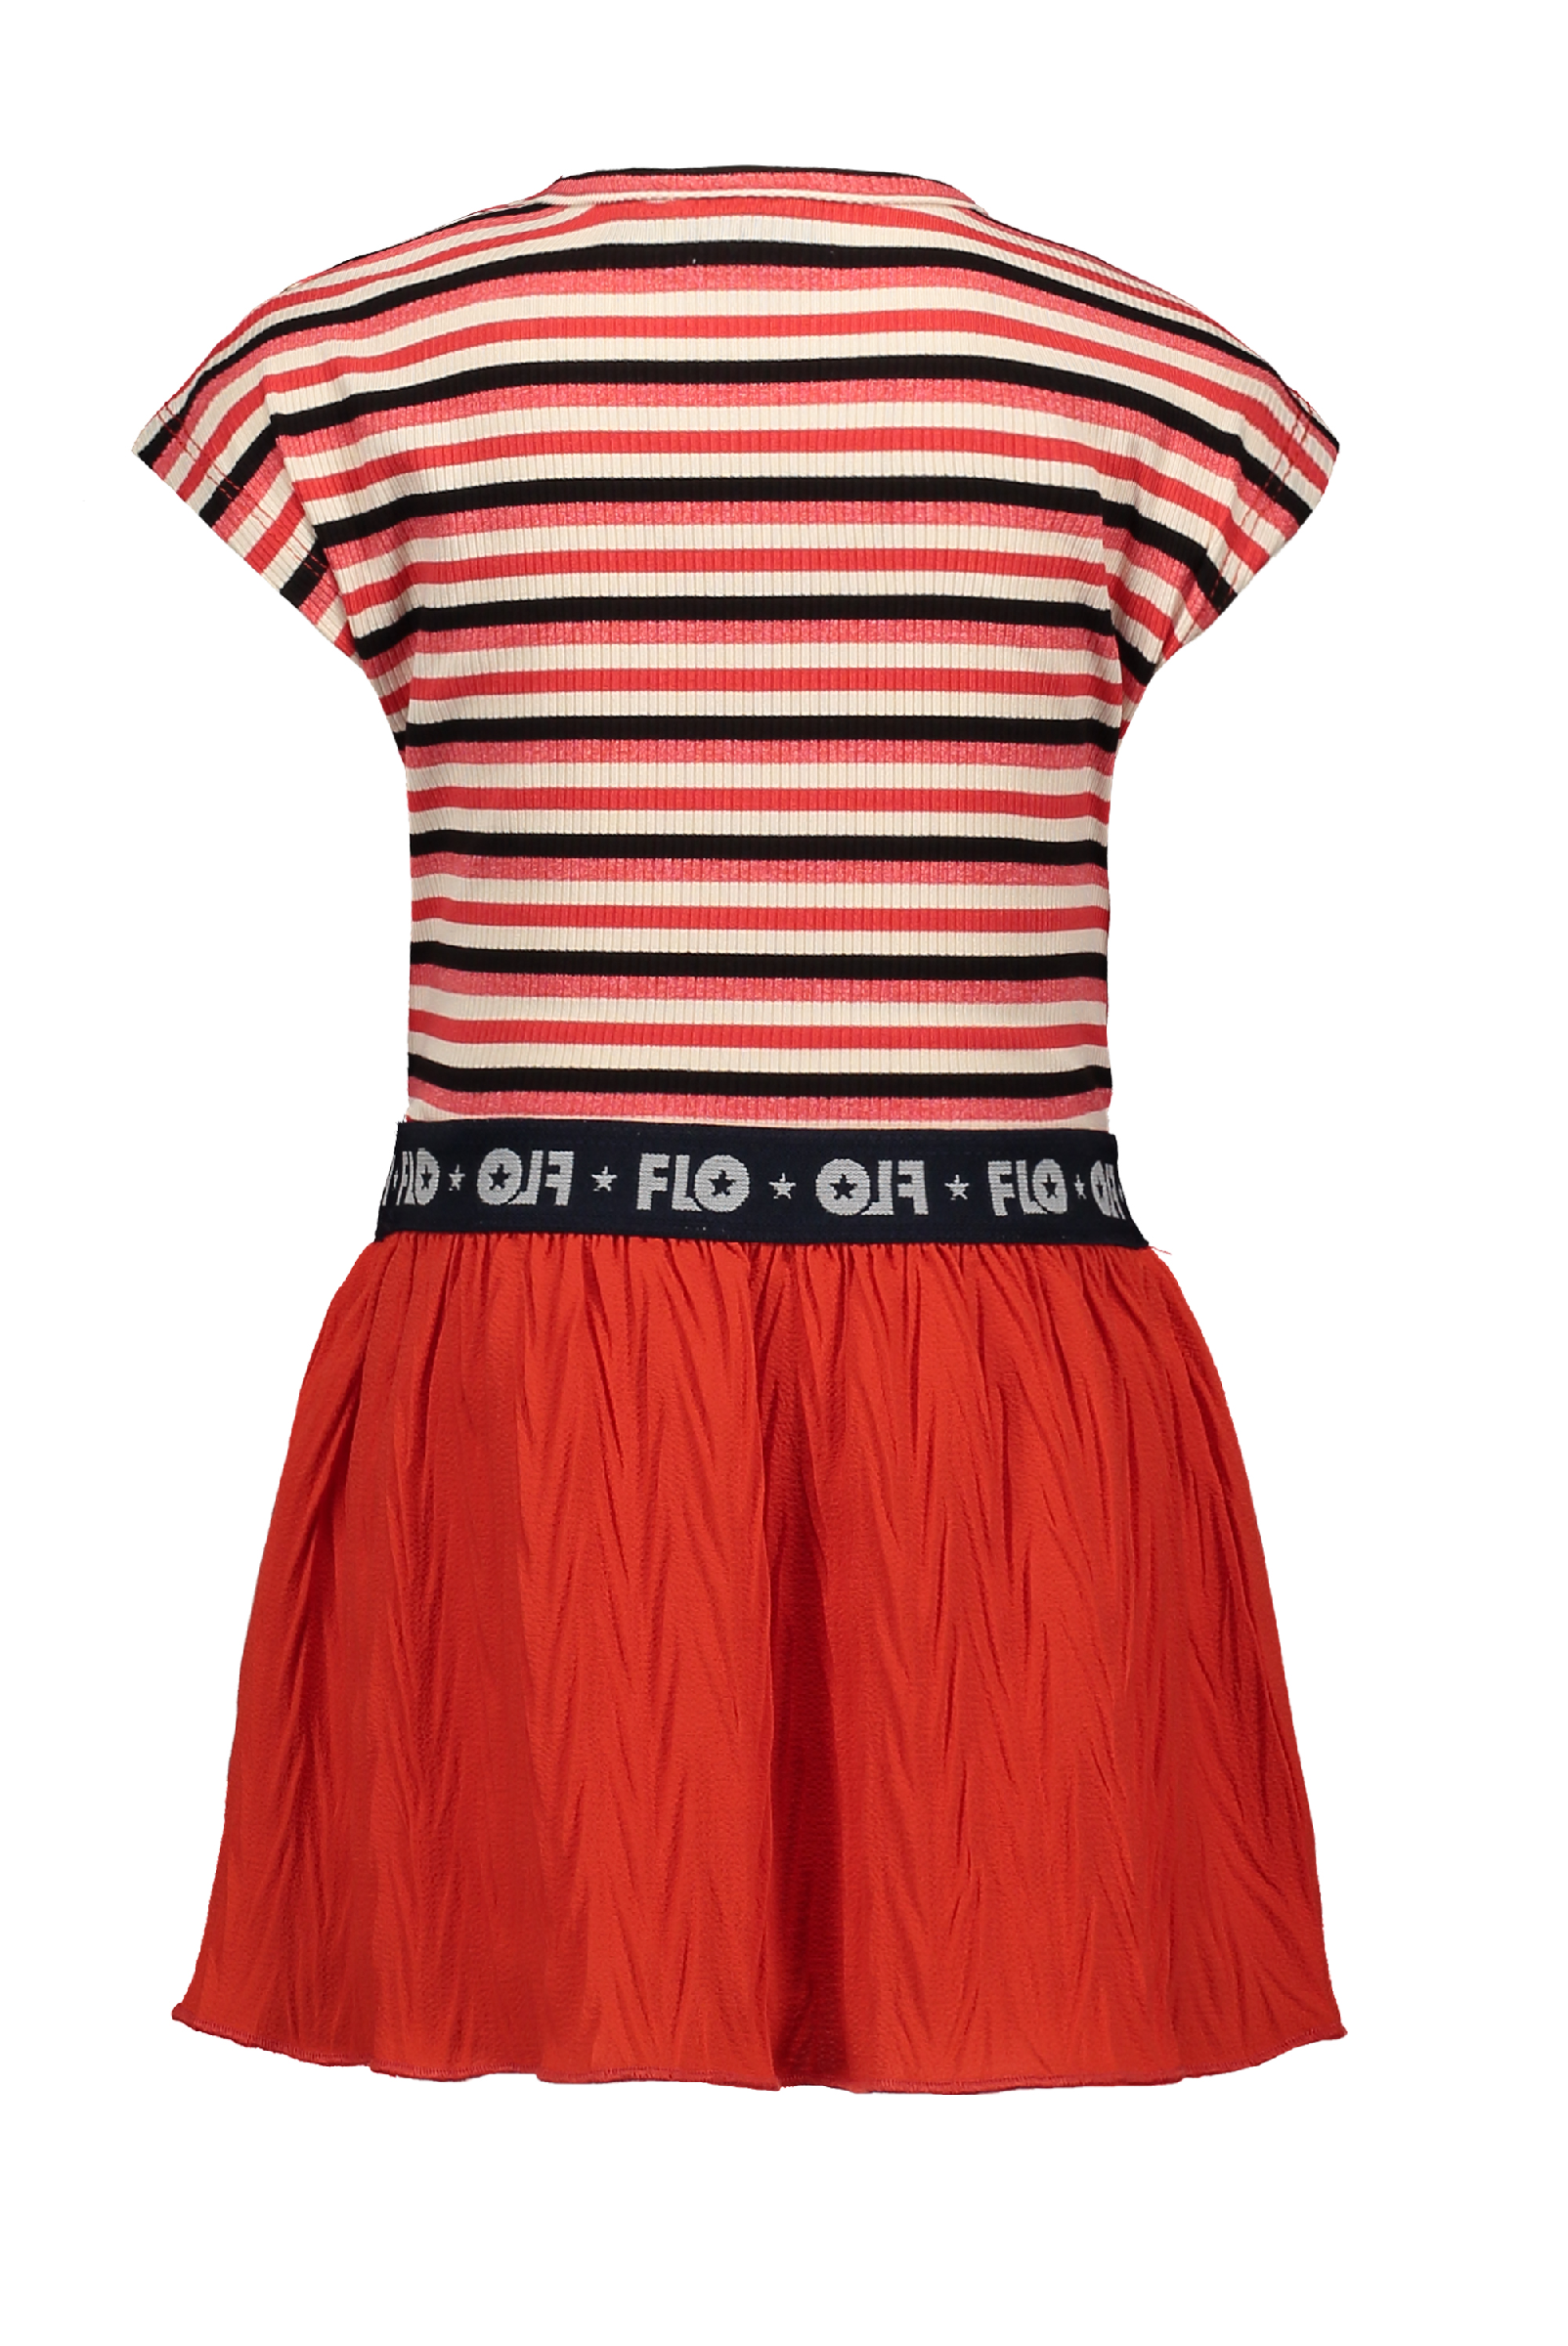 Meisjes Flo baby girls YD rib dress with fancy skirt van Flo in de kleur Zigzag in maat 92.